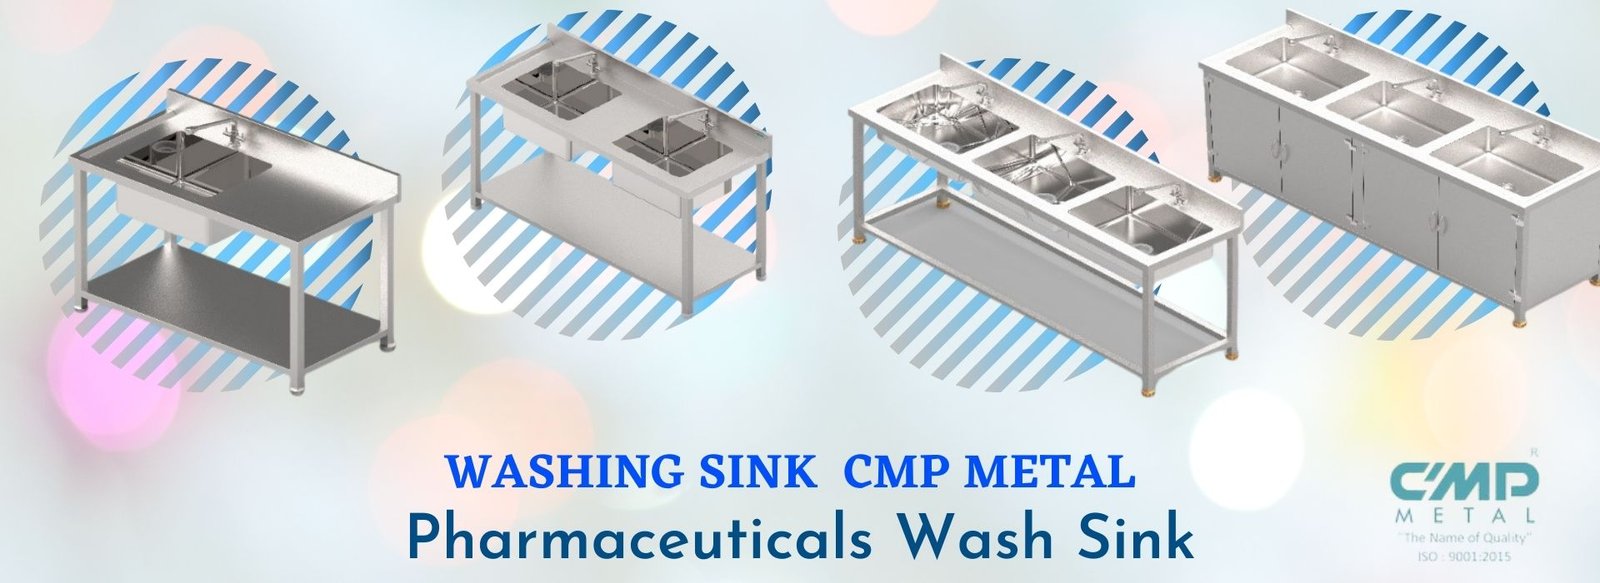 Washing Sink Cmp Metal Pharmaceuticals Wash Sink